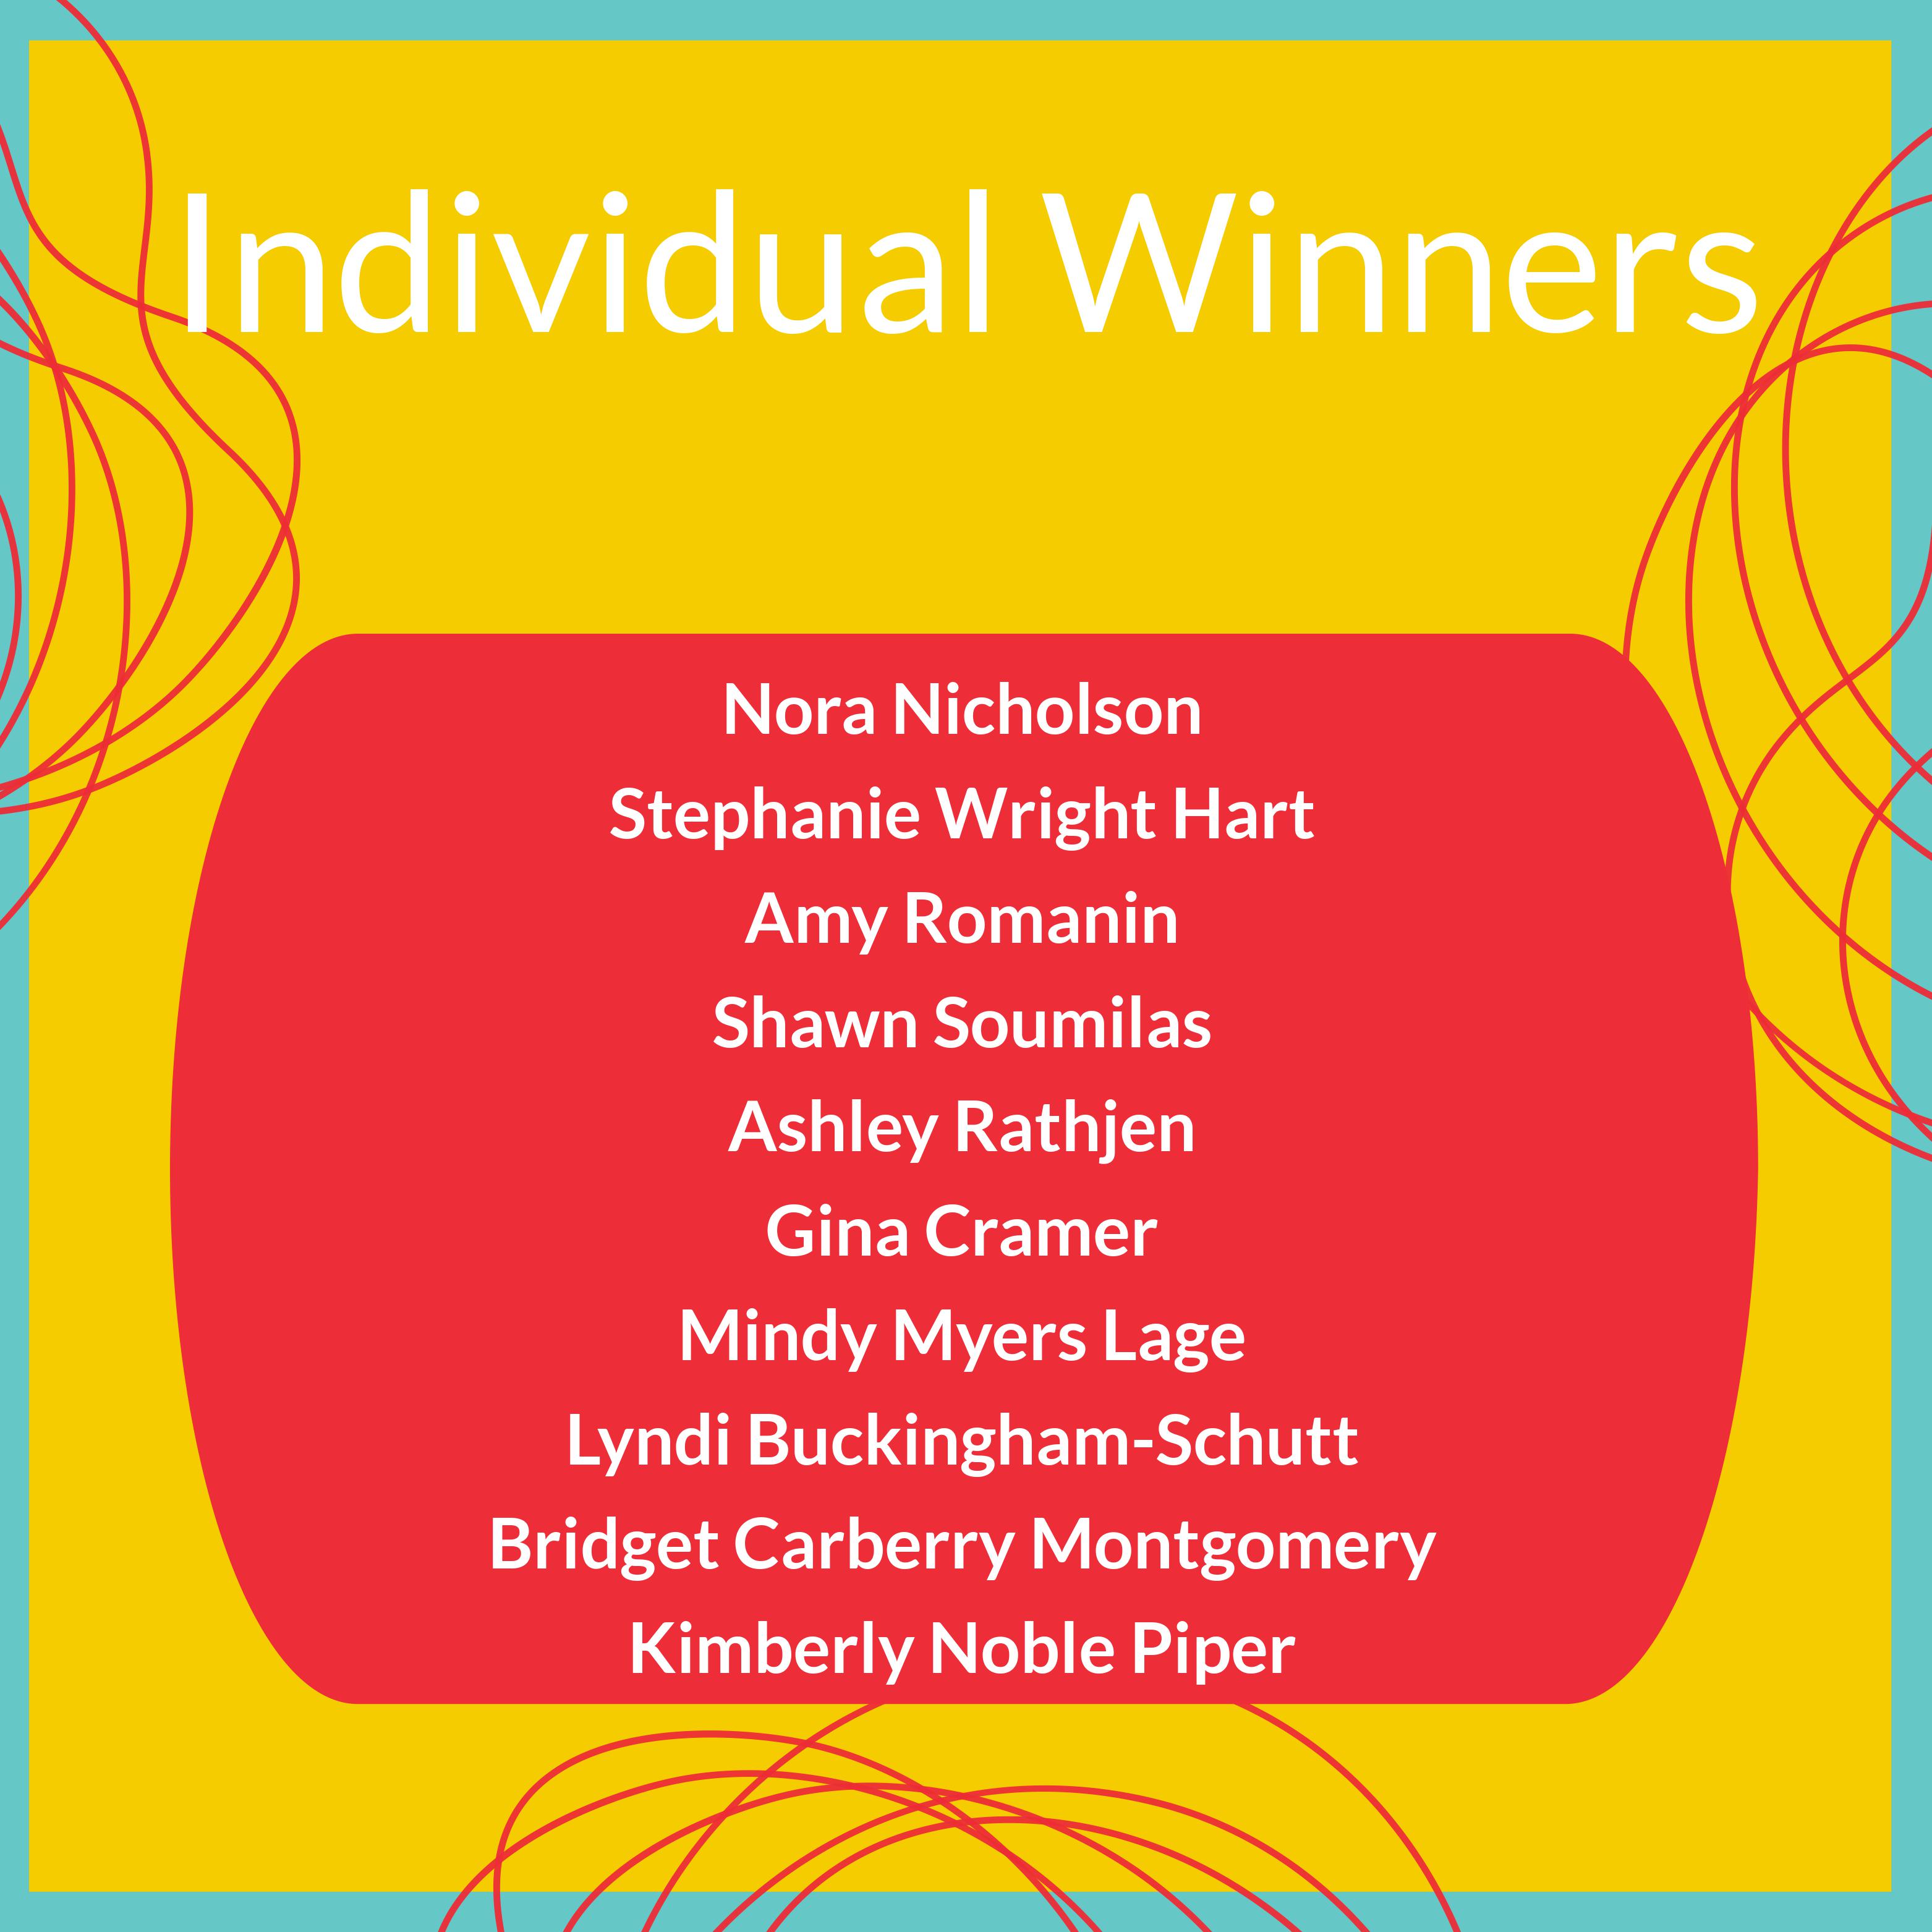 Individual Winners 5.12.21.jpg